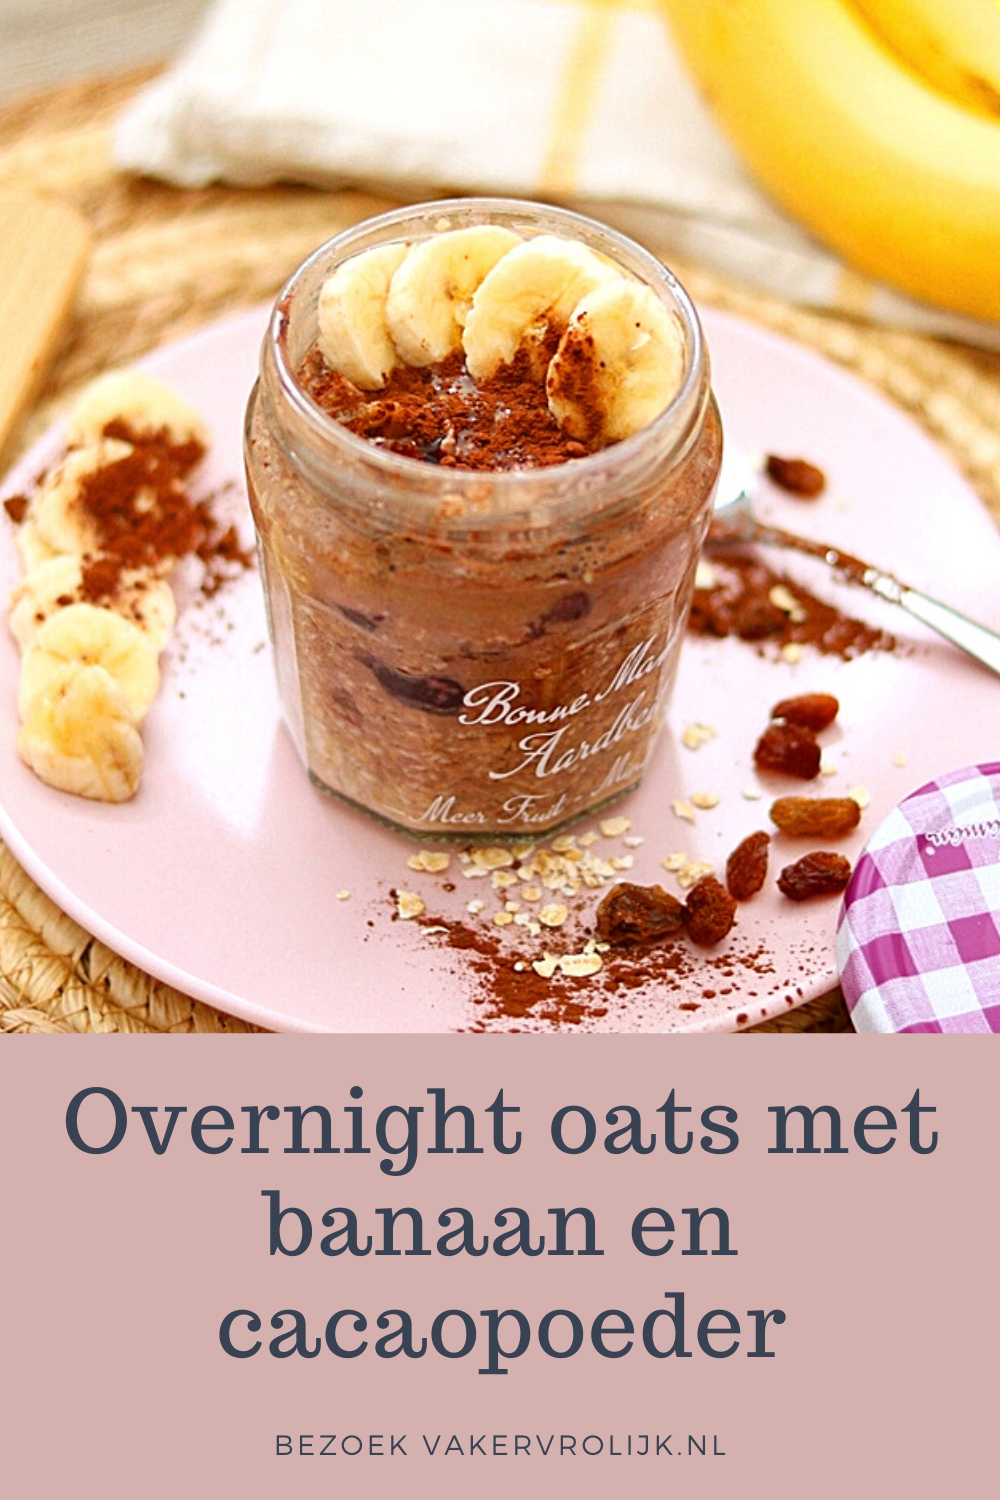 overnight oats met banaan en cacao